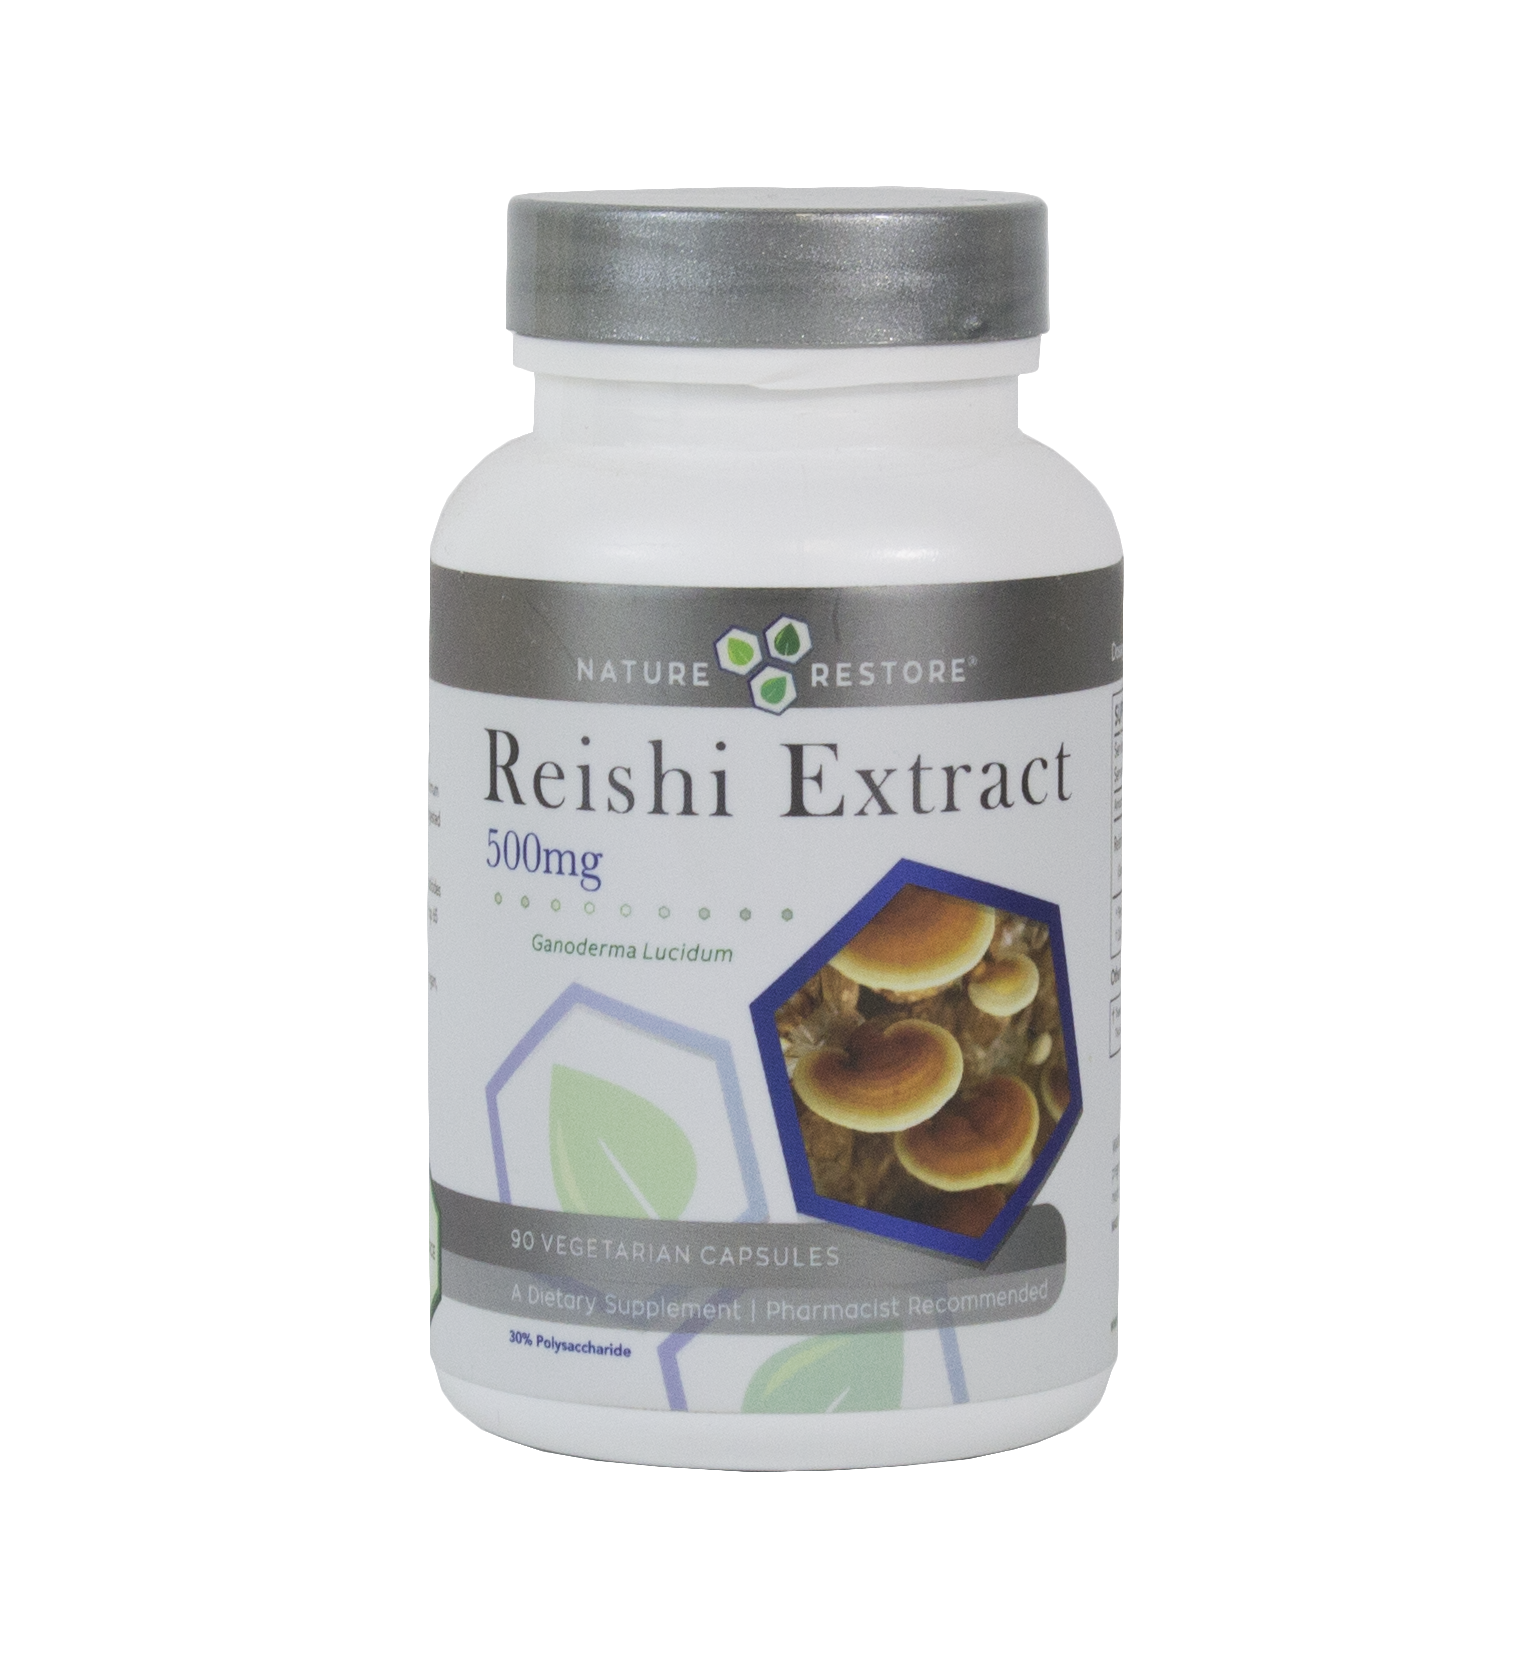 Reishi extract